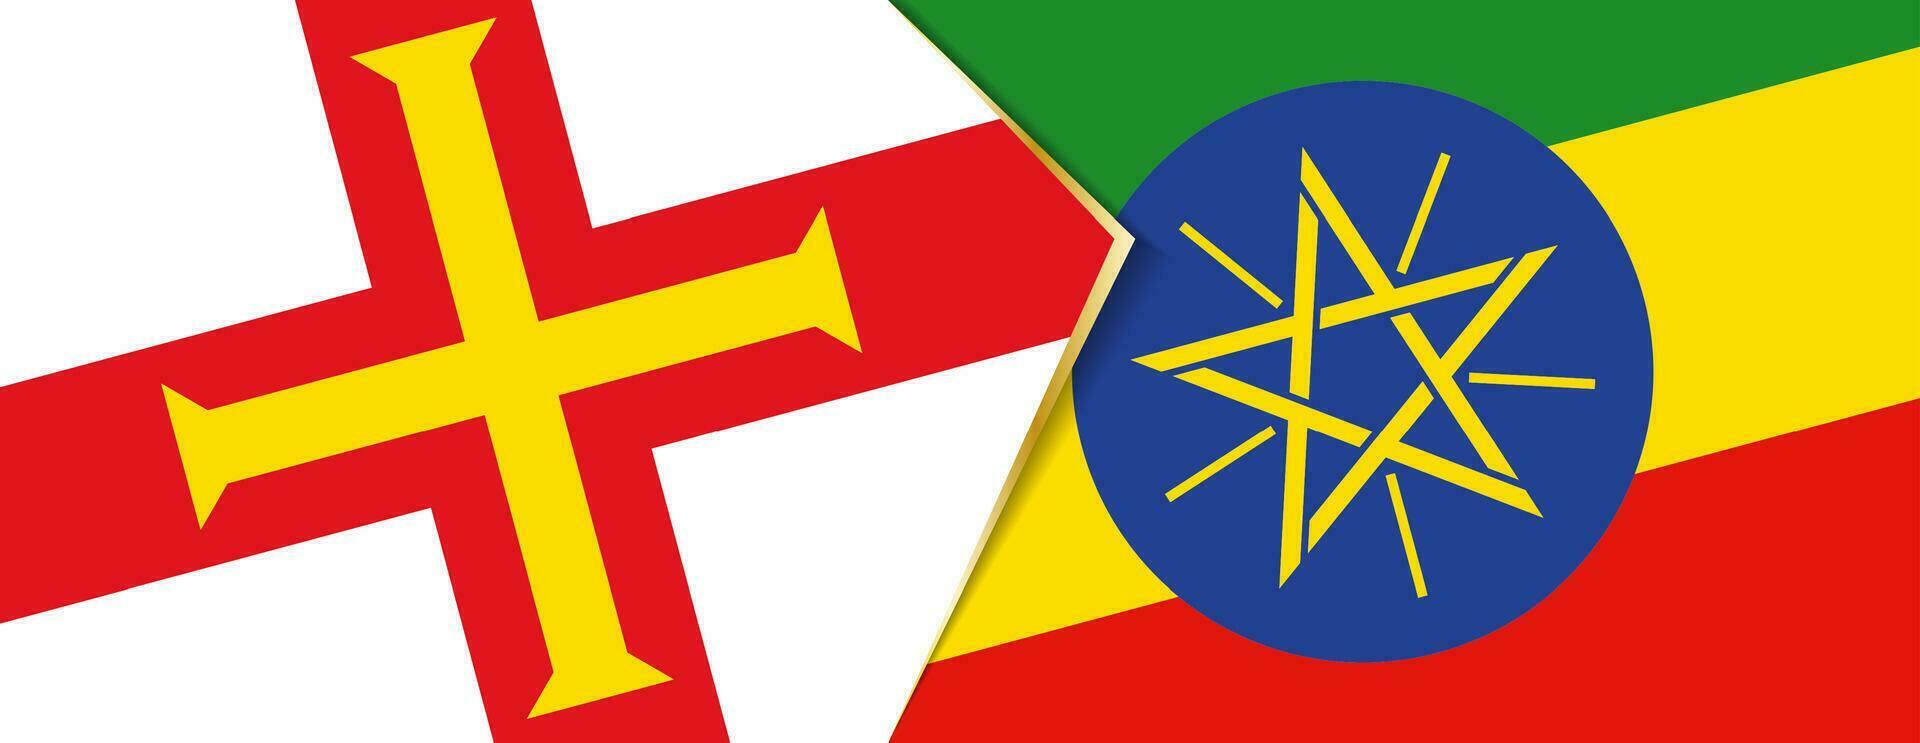 Guernsey e Etiópia bandeiras, dois vetor bandeiras.